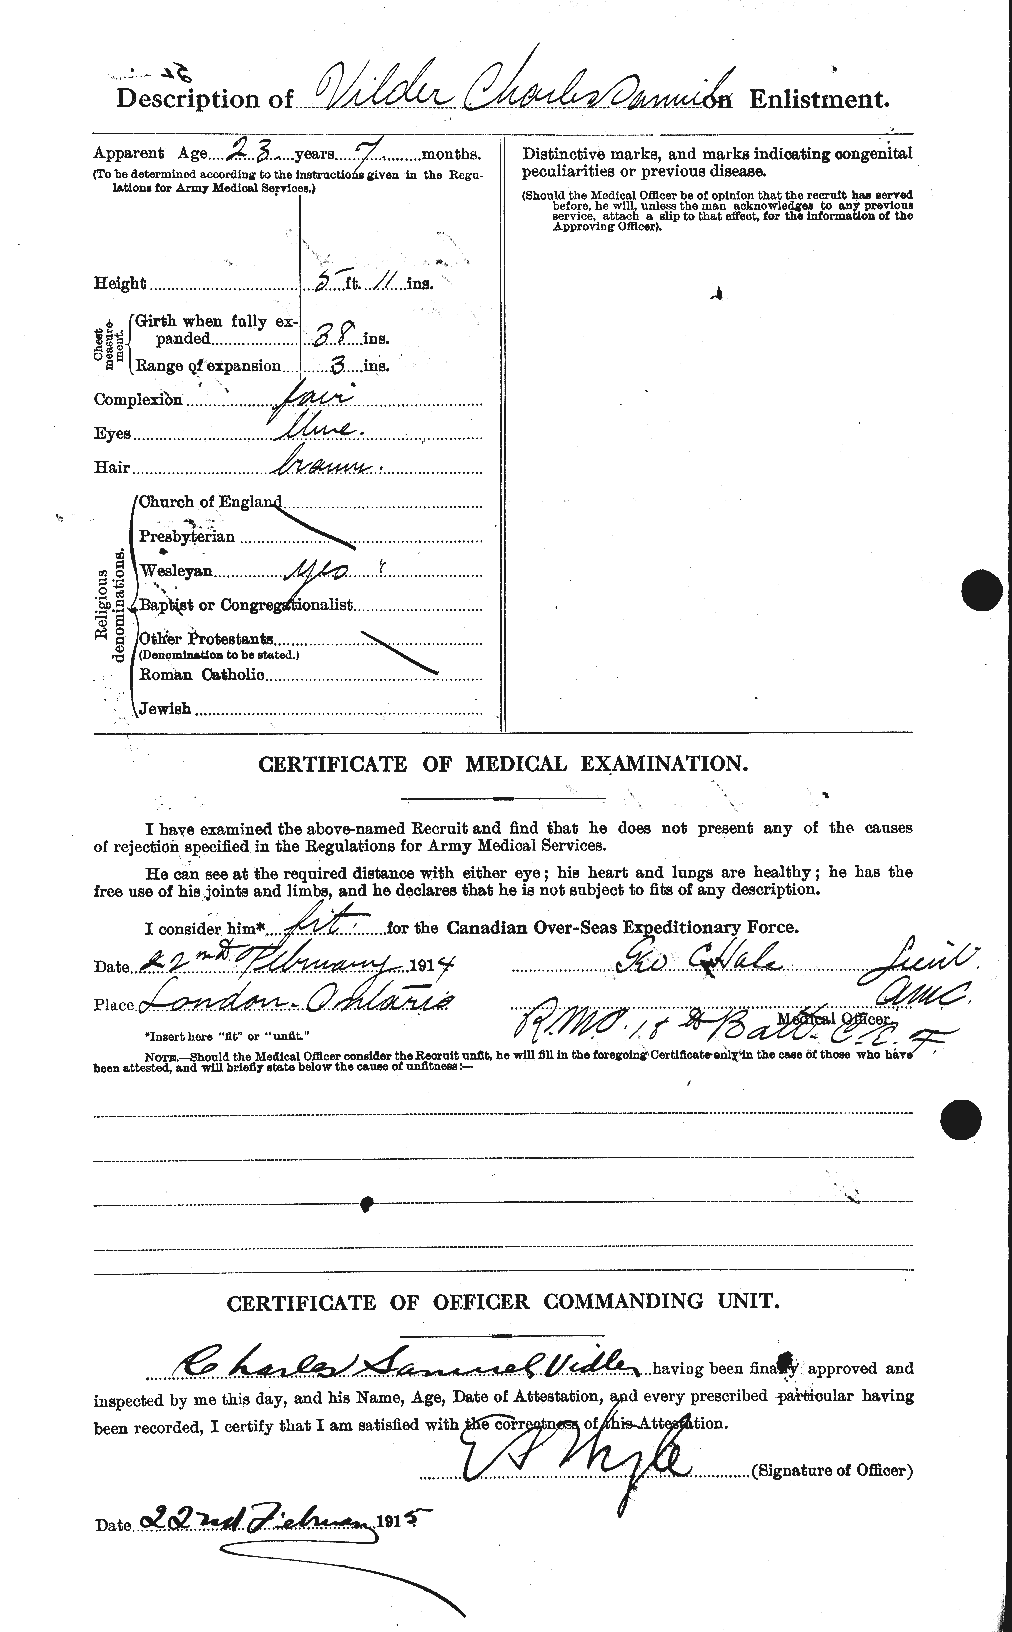 Dossiers du Personnel de la Première Guerre mondiale - CEC 652347b